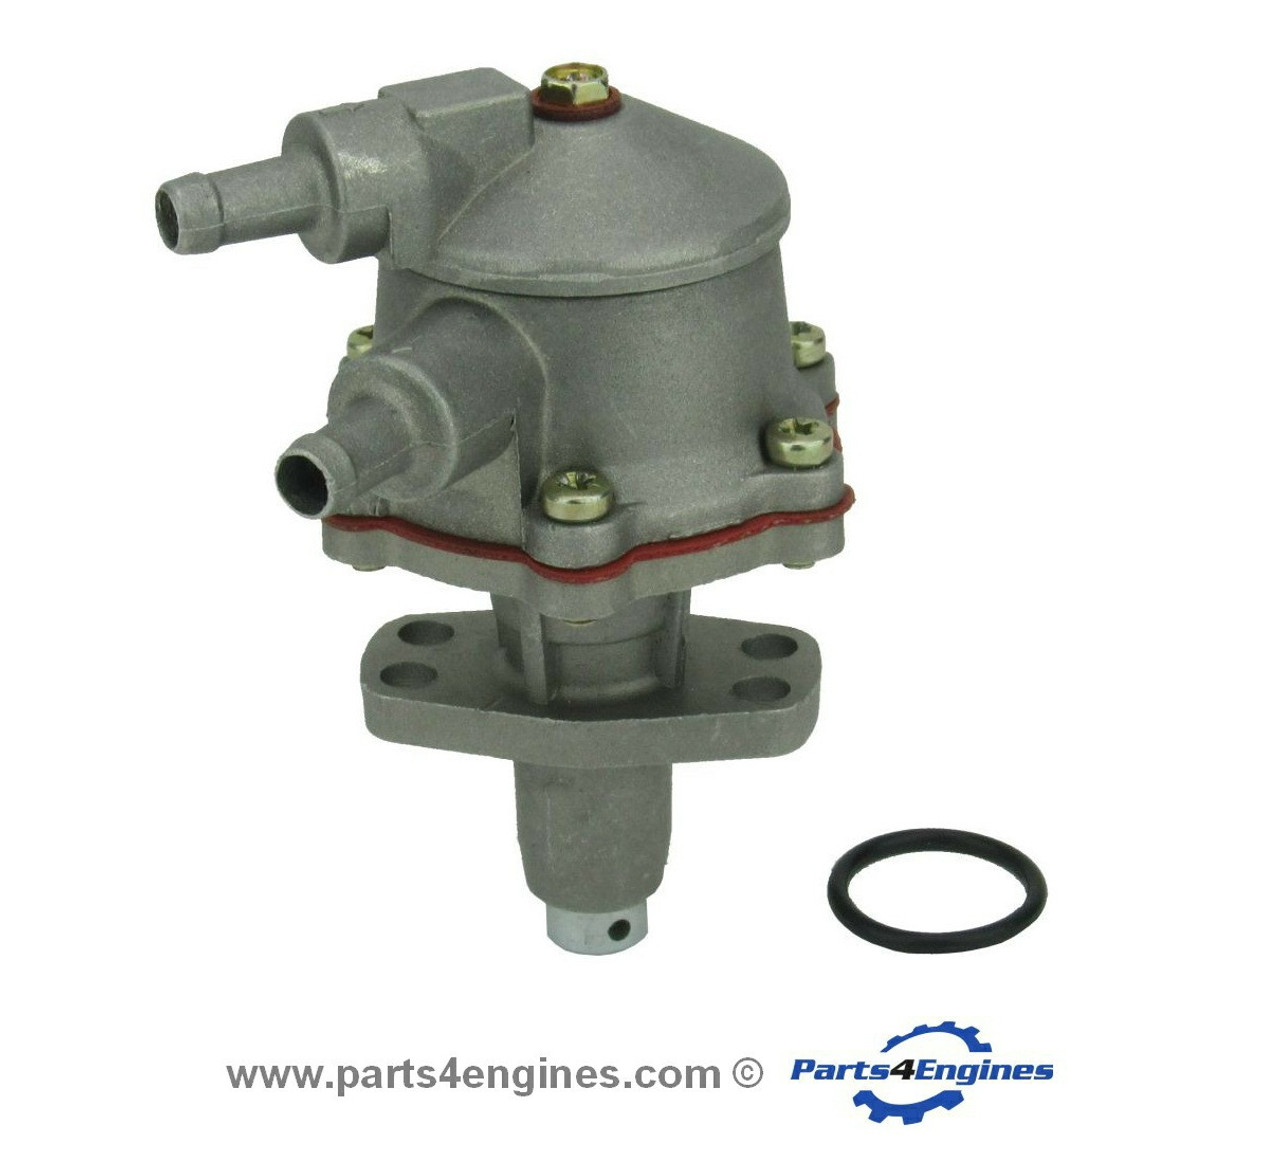 Volvo Penta D1-30 Fuel lift pump kit - Parts4engines.com